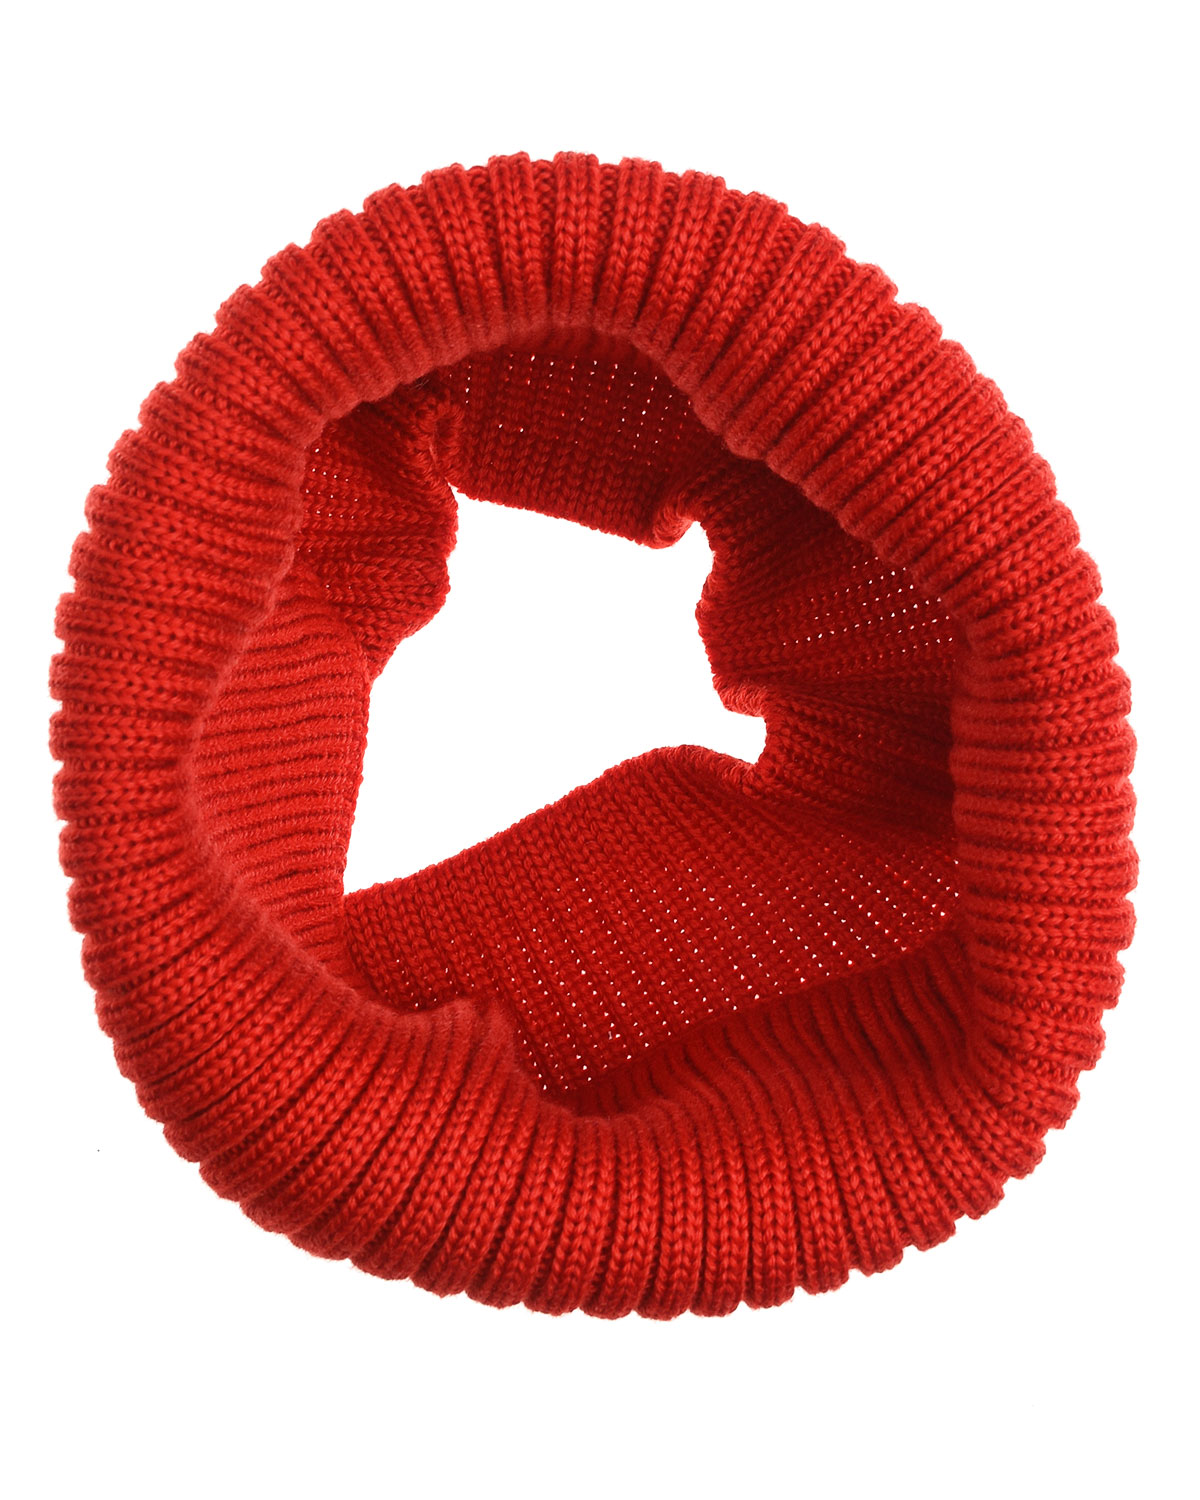 Красный шарф-снуд, 19x21 см Jan&Sofie детский, размер unica - фото 4